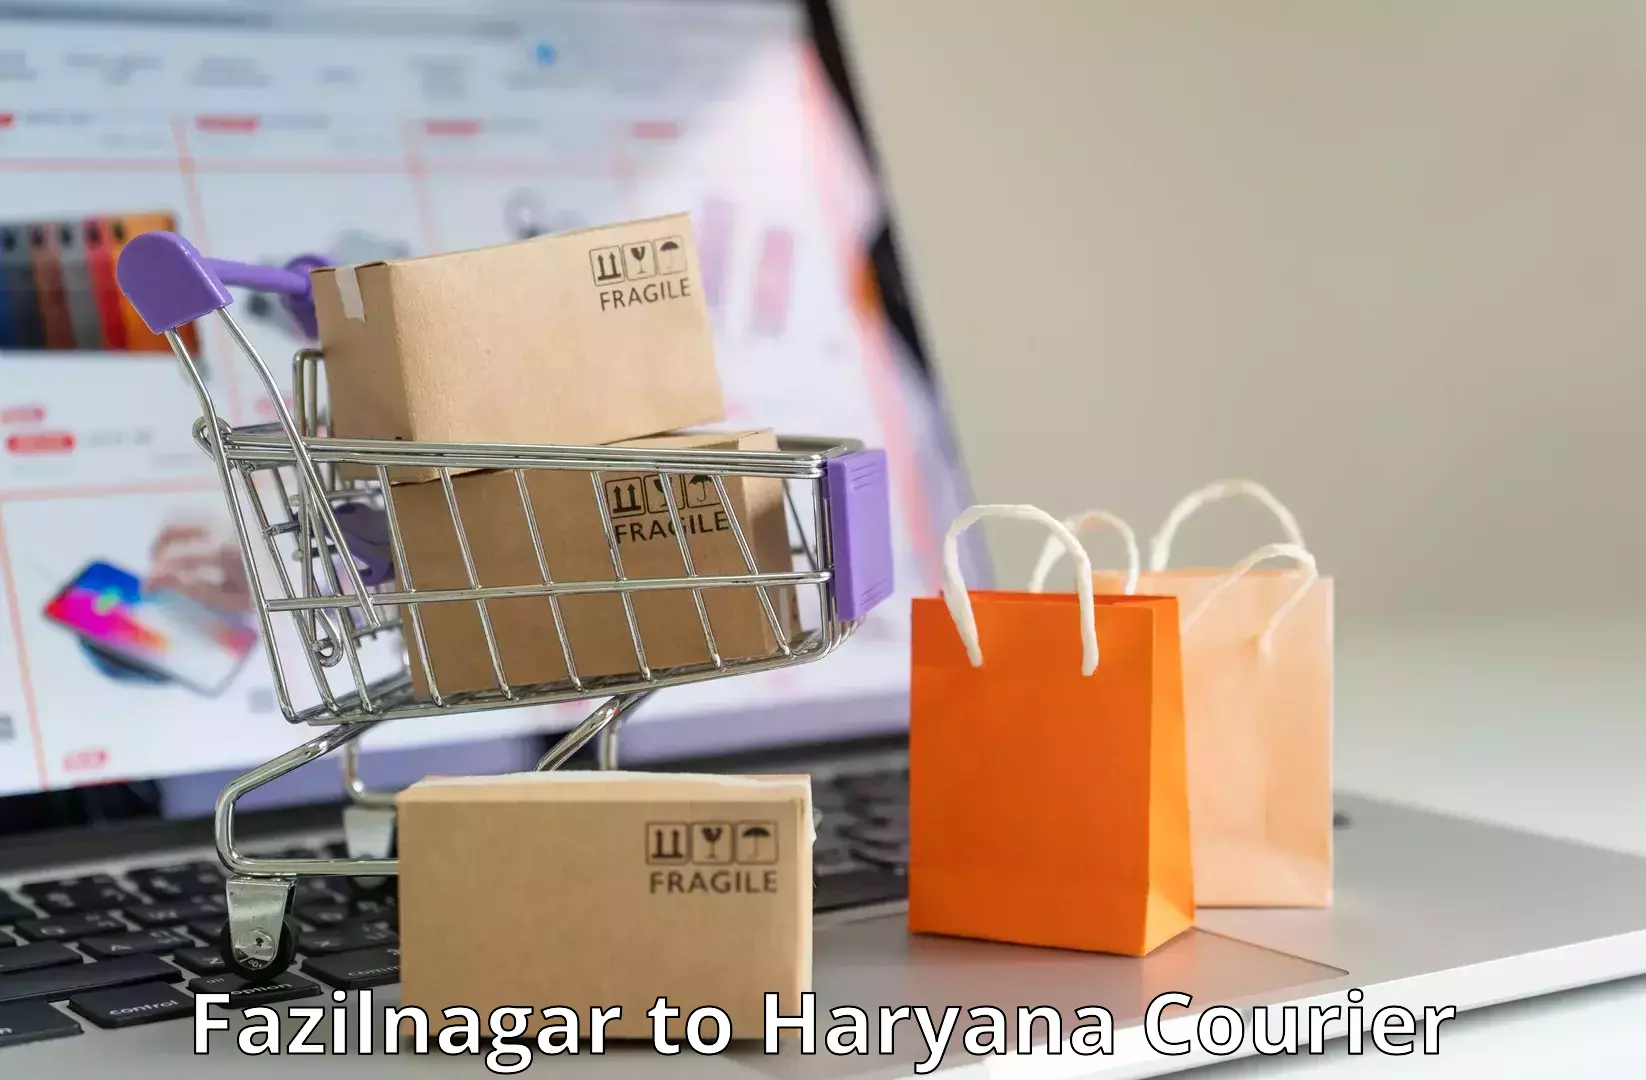 24/7 courier service Fazilnagar to Panipat